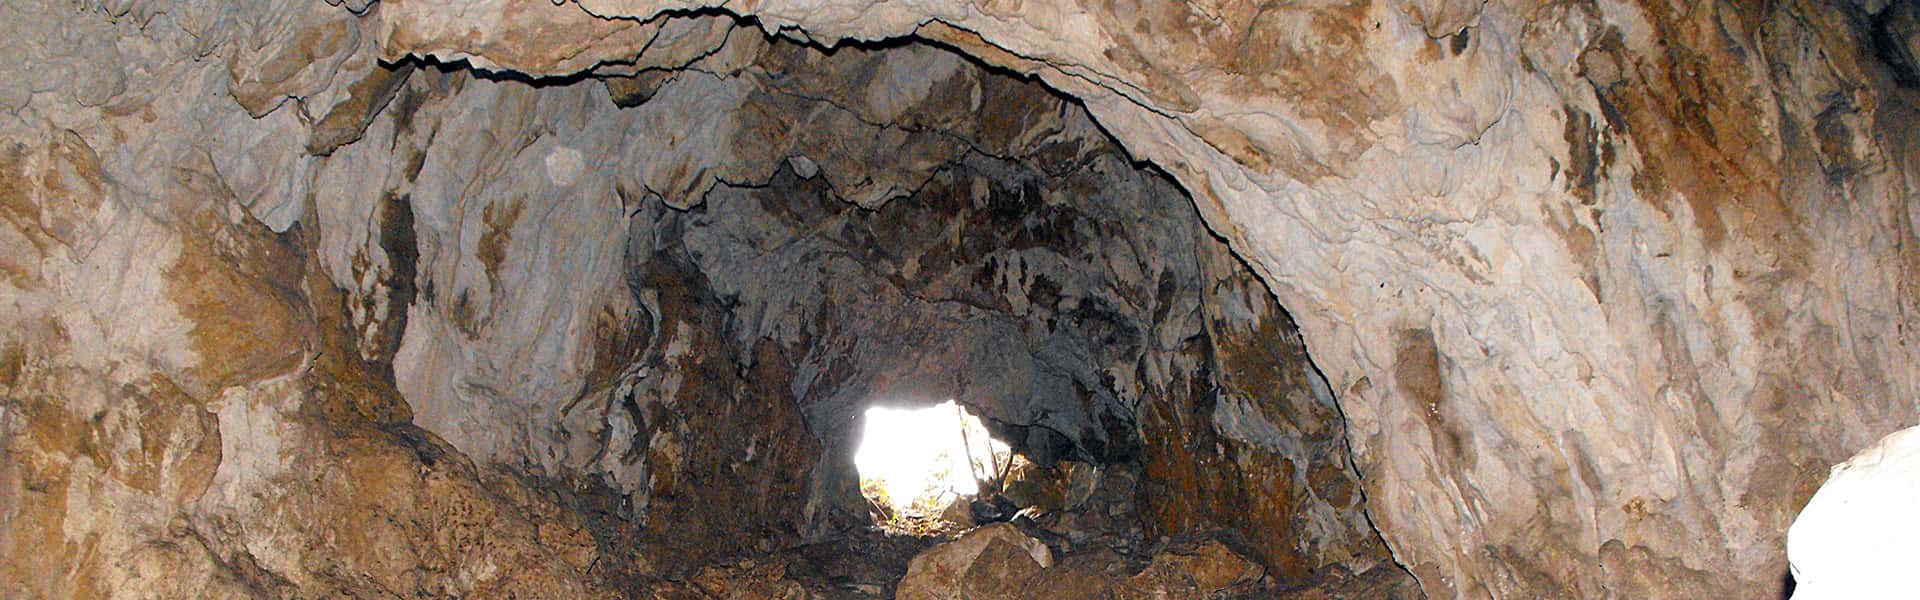 Σπήλαιο Μικρόπολης